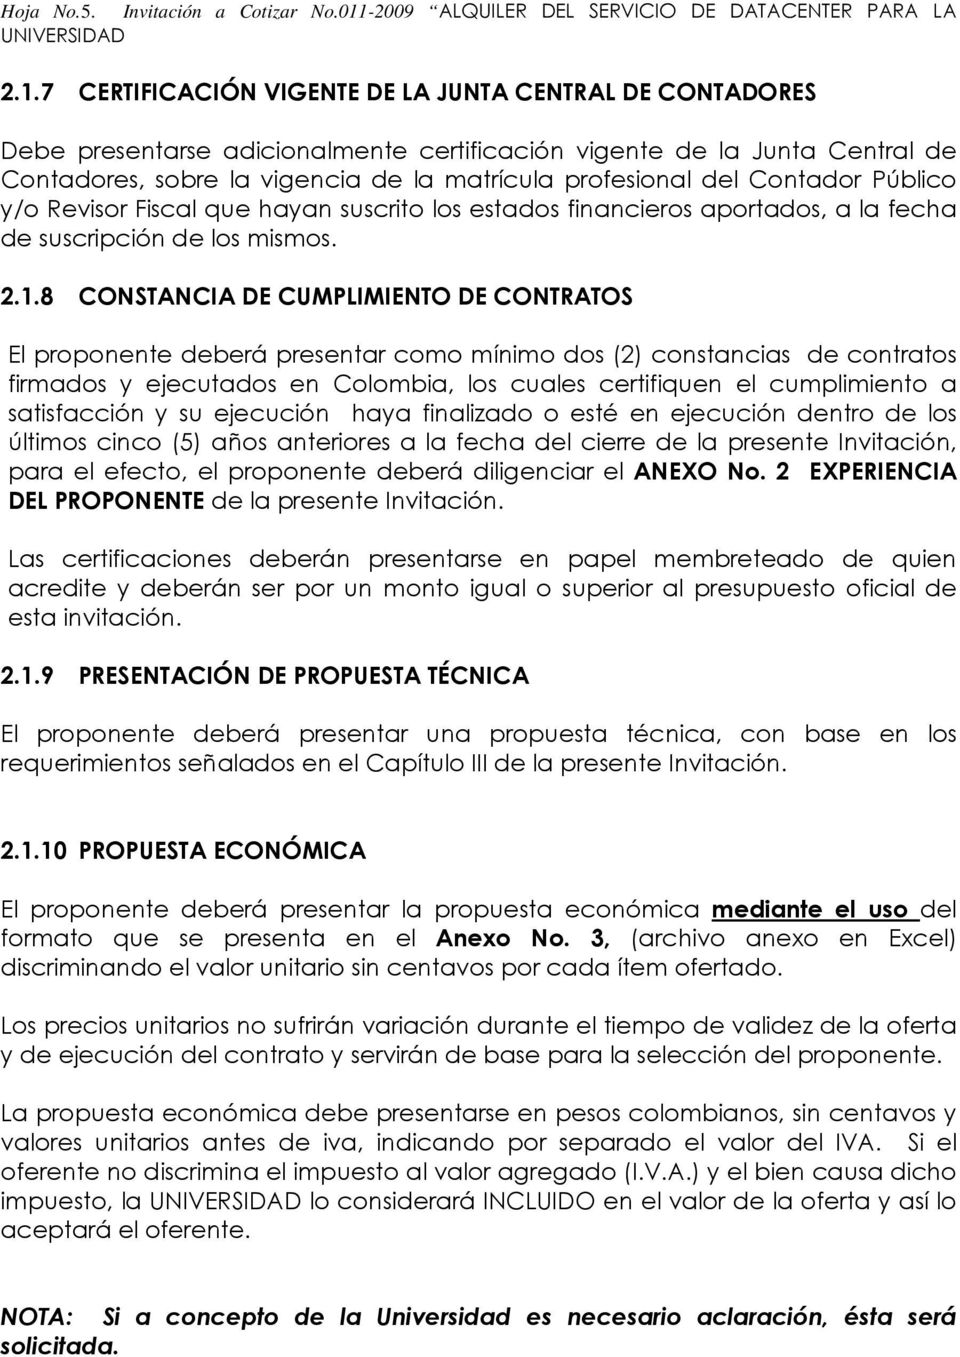 7 CERTIFICACIÓN VIGENTE DE LA JUNTA CENTRAL DE CONTADORES Debe presentarse adicinalmente certificación vigente de la Junta Central de Cntadres, sbre la vigencia de la matrícula prfesinal del Cntadr